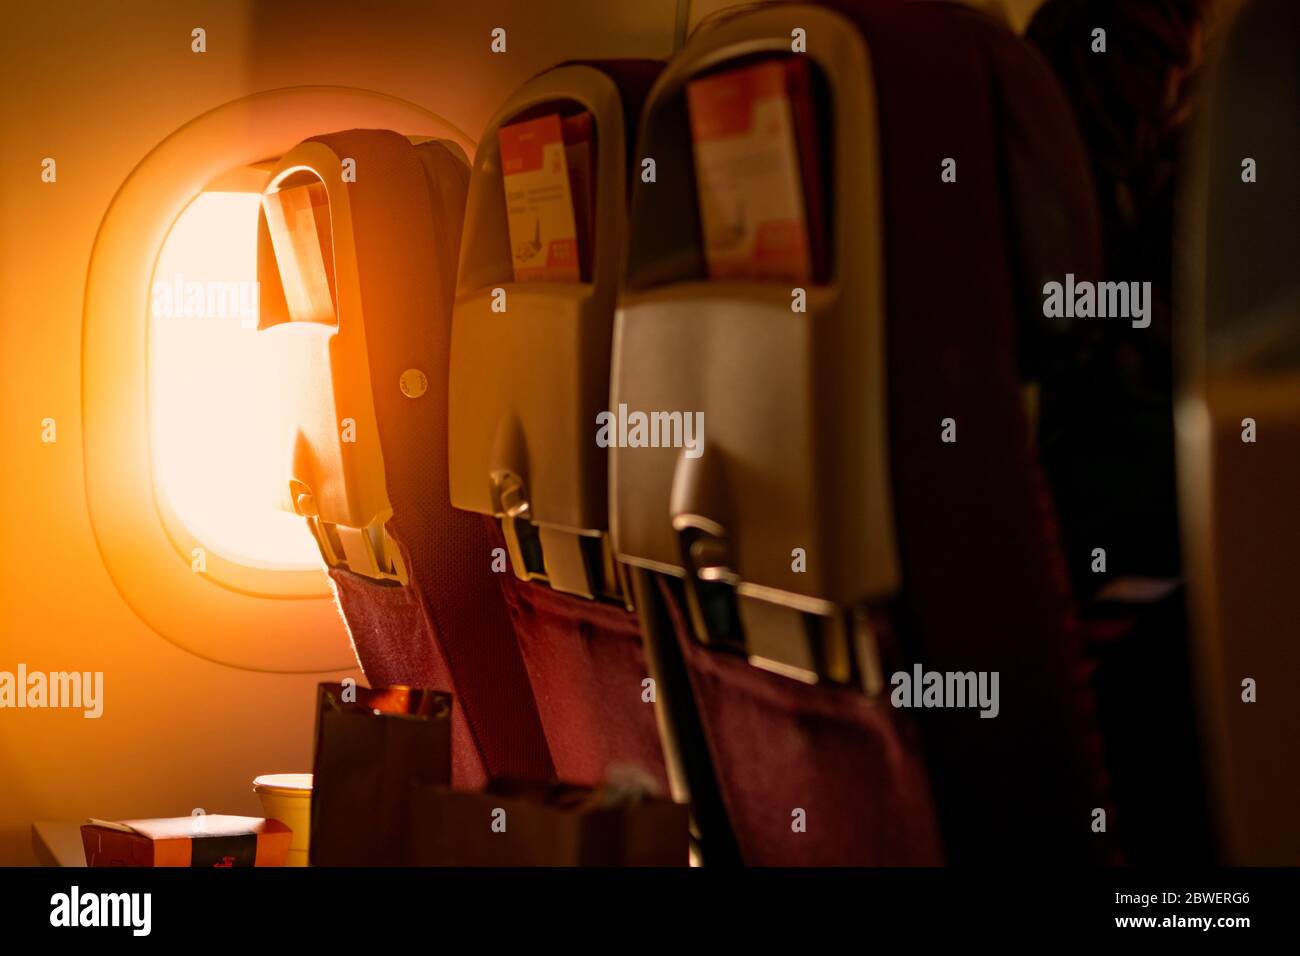 Vista posterior del asiento económico con folleto de papel en la caja sobre la mesa de plástico de la bandeja del avión. Luz del sol pasando por el avión de clase económica Foto de stock